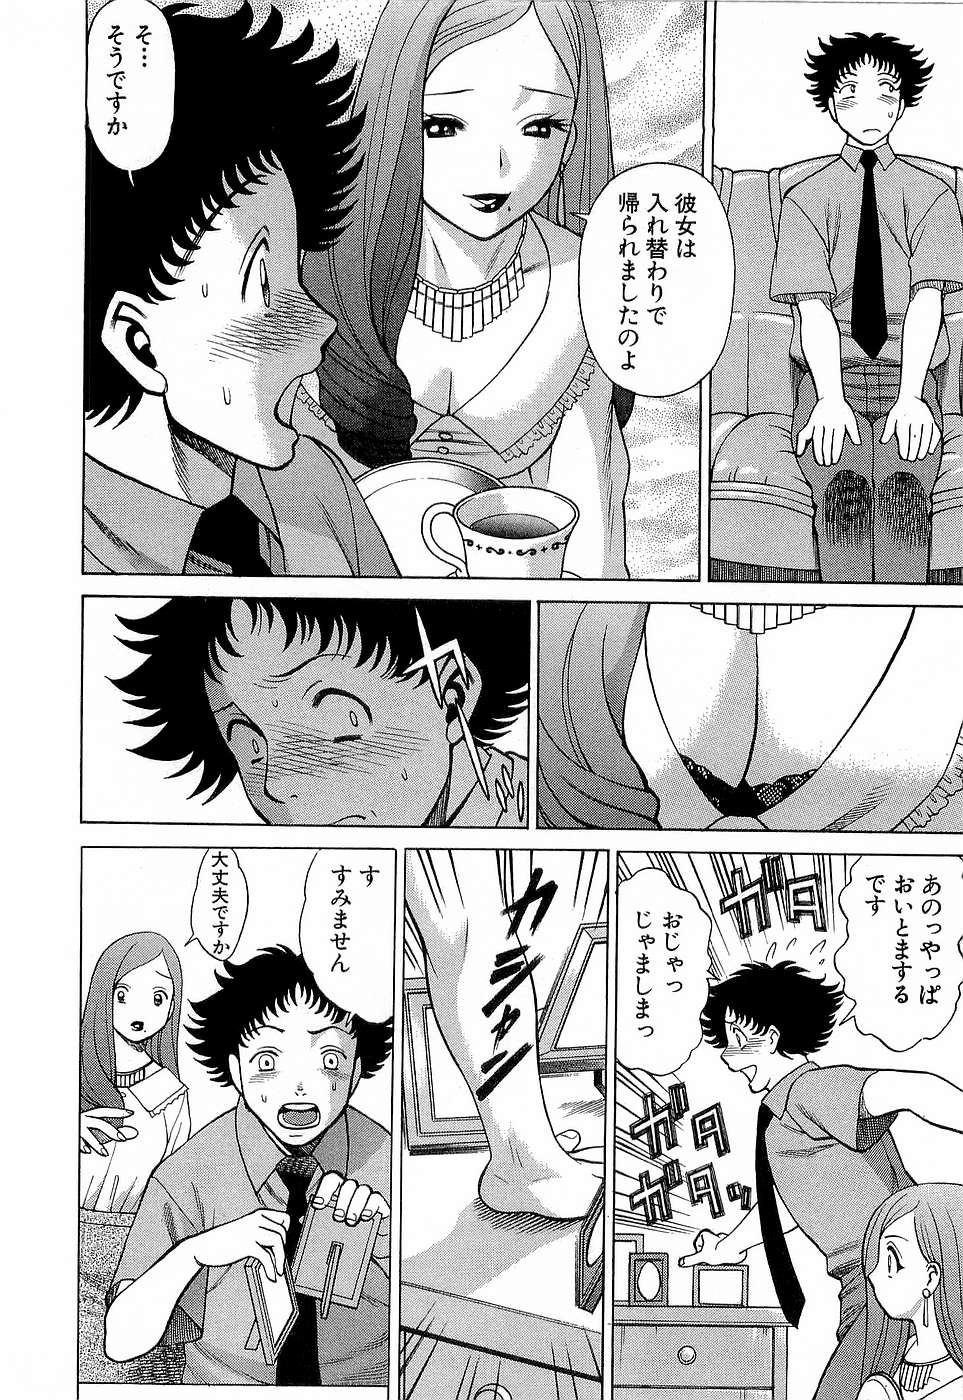 [Tamaki Nozomu] Nanairo Karen x3 Cosplay Complex page 41 full